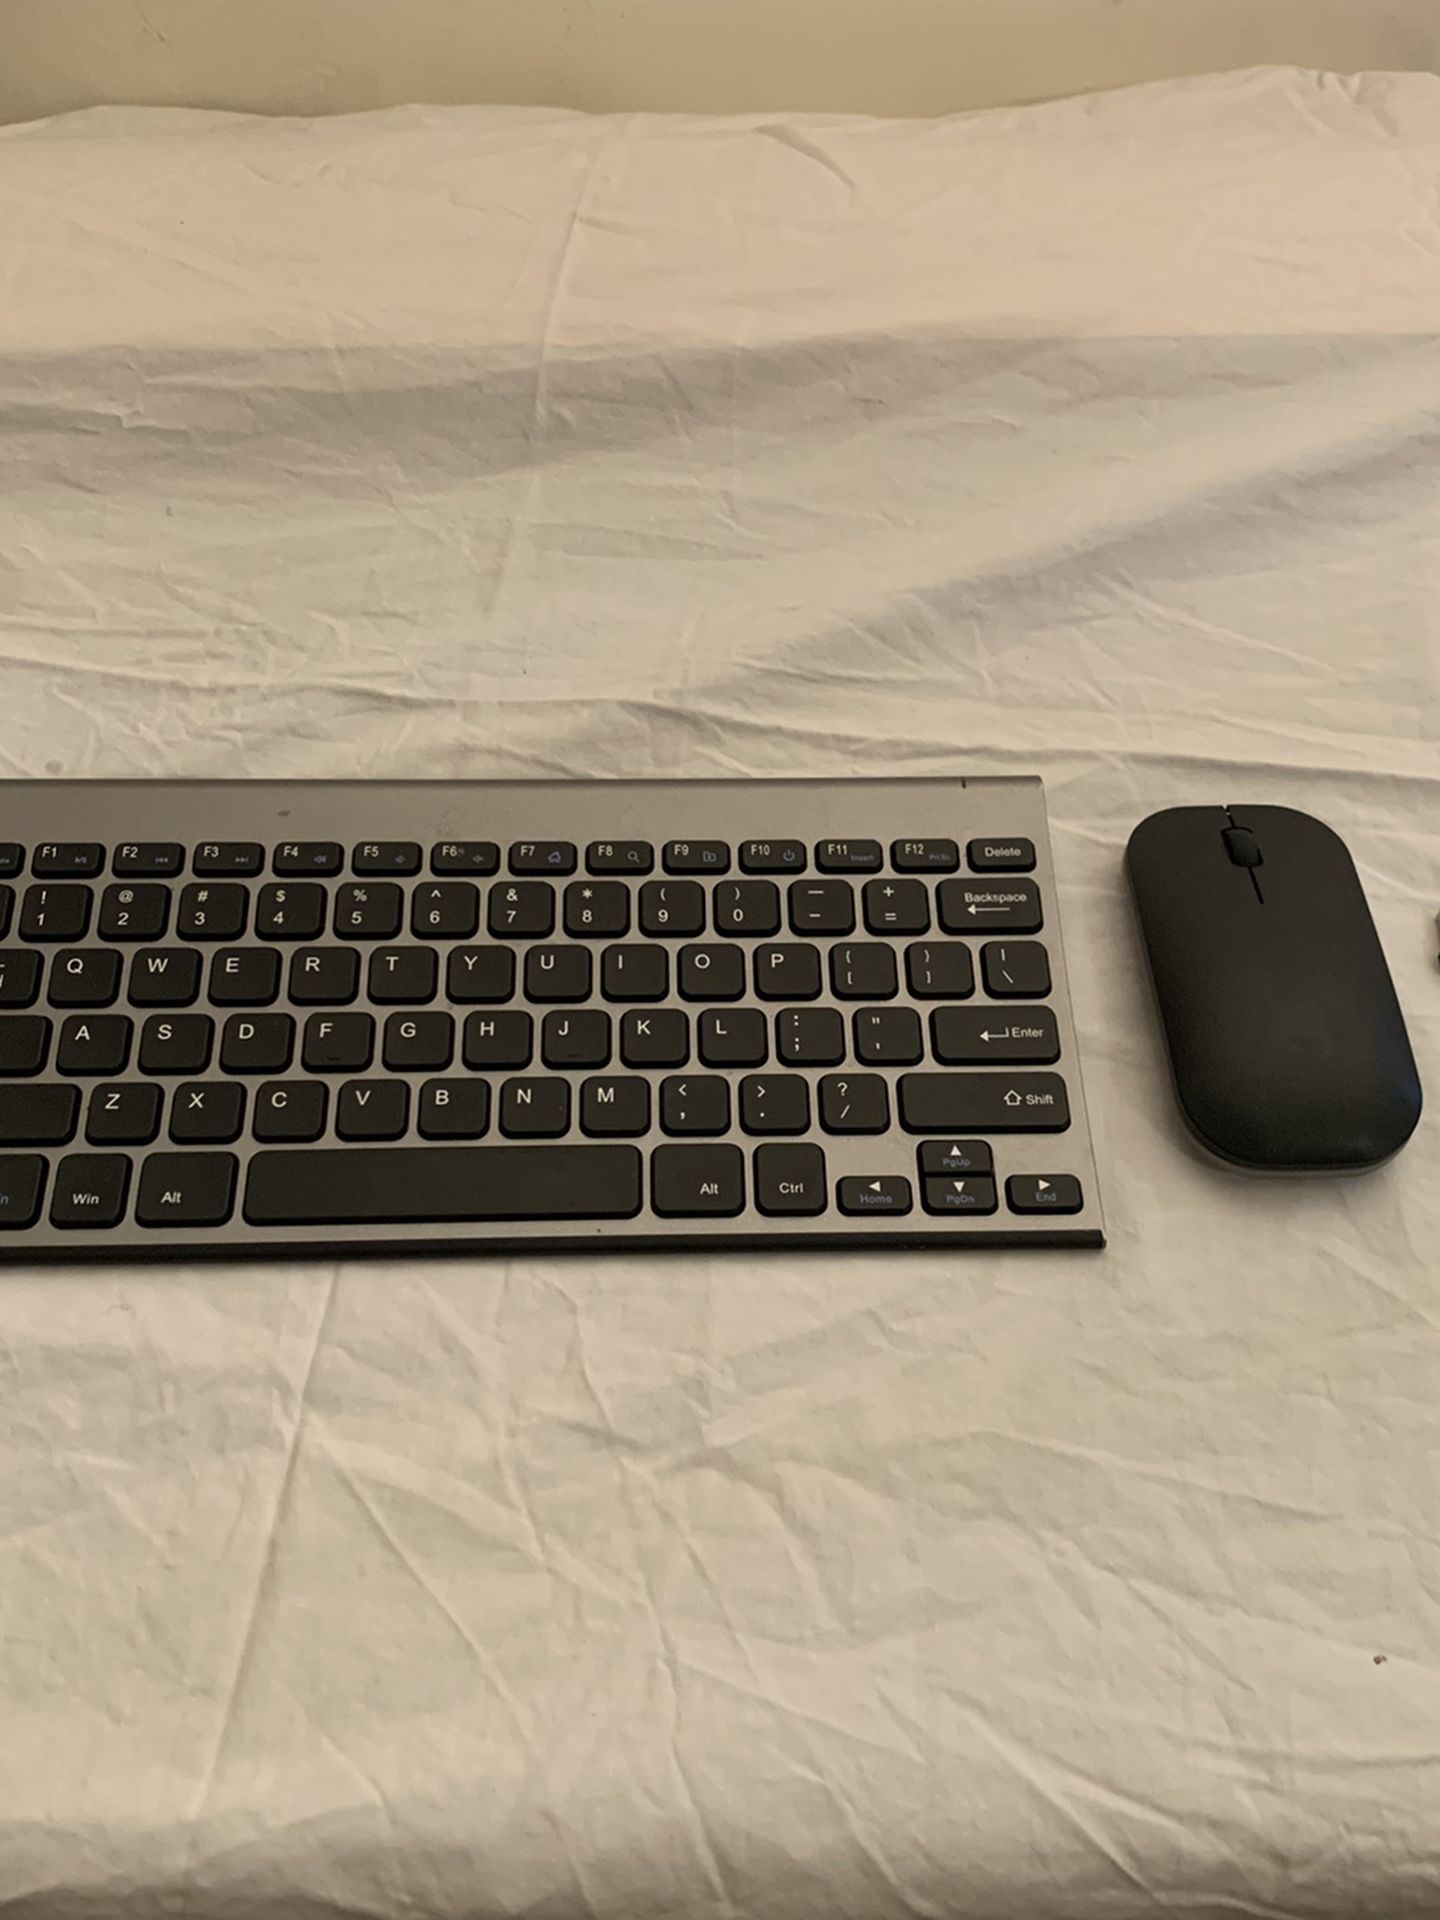 Wireless Keyboard + Mouse - $25